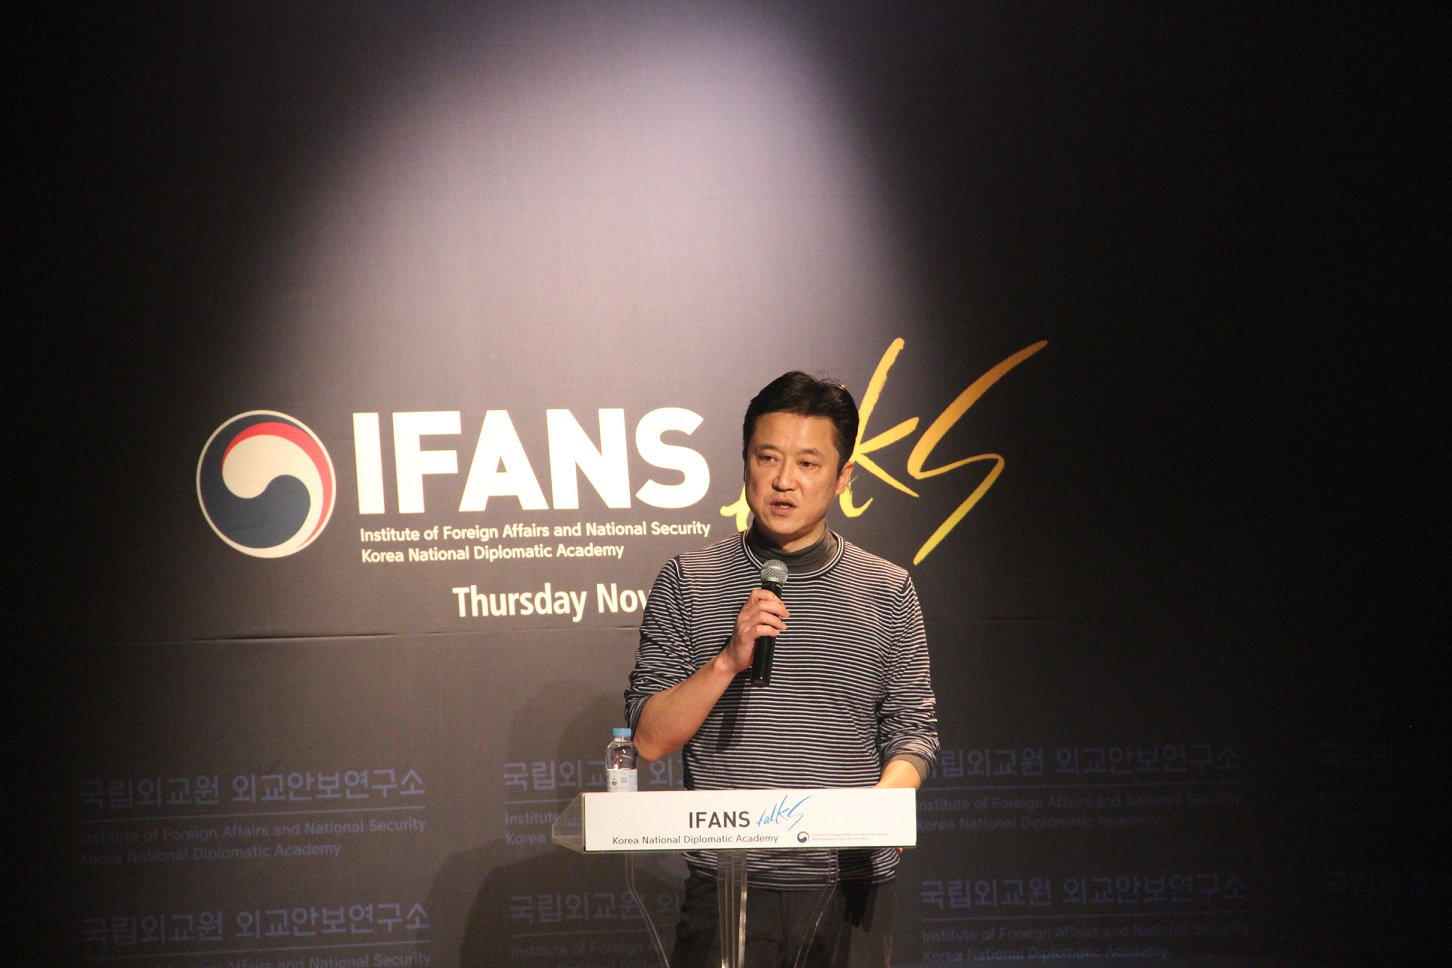 제18차 IFANS Talks 개최(11.16)